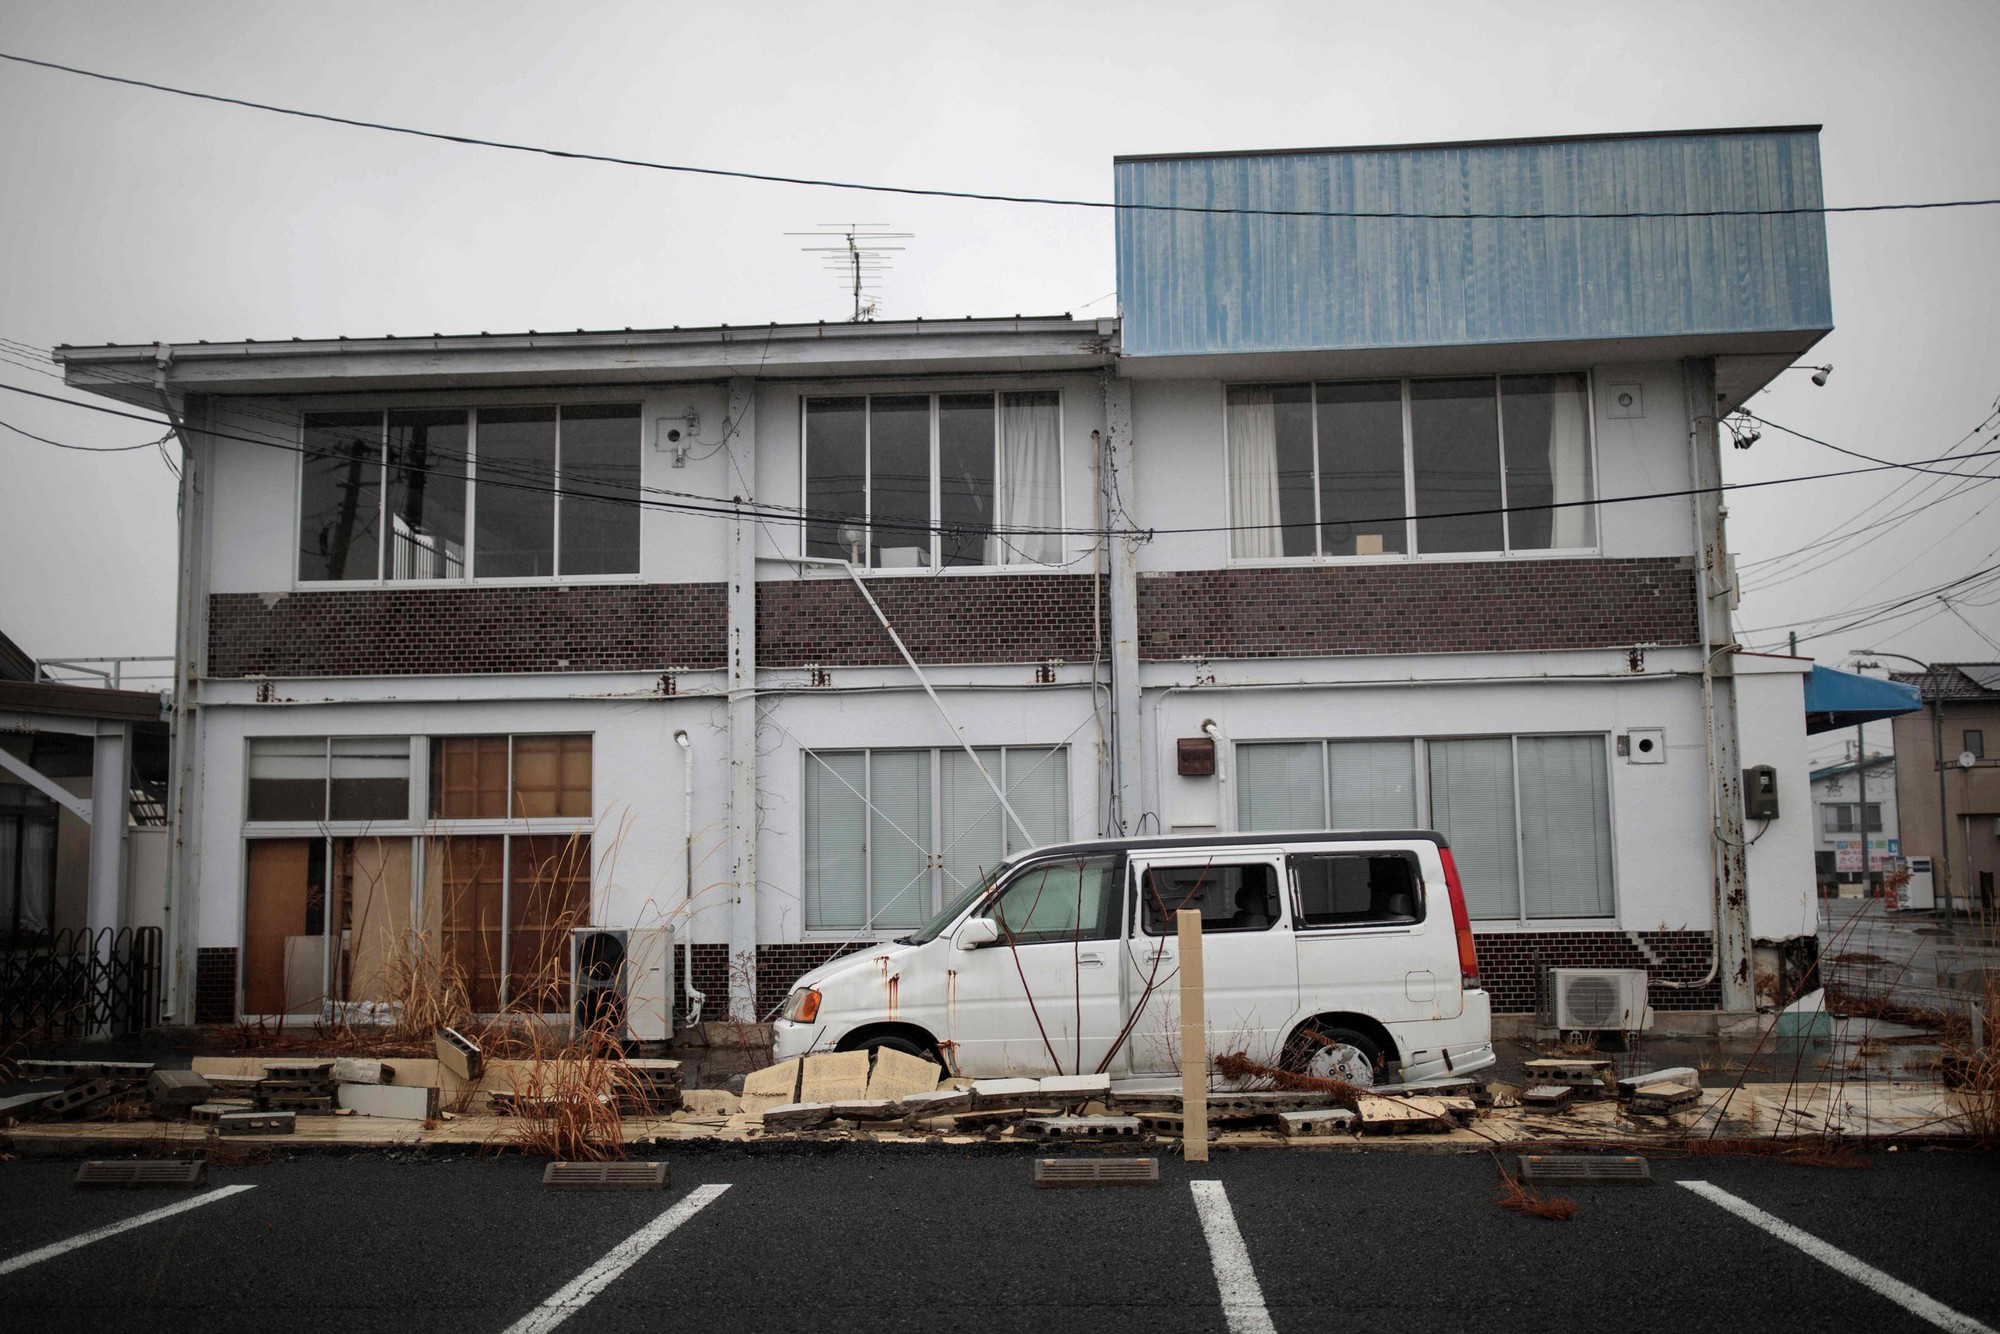 Hơn 9 triệu ngôi nhà hoang ở Nhật: Vì sao nhiều người dân nước này lại 